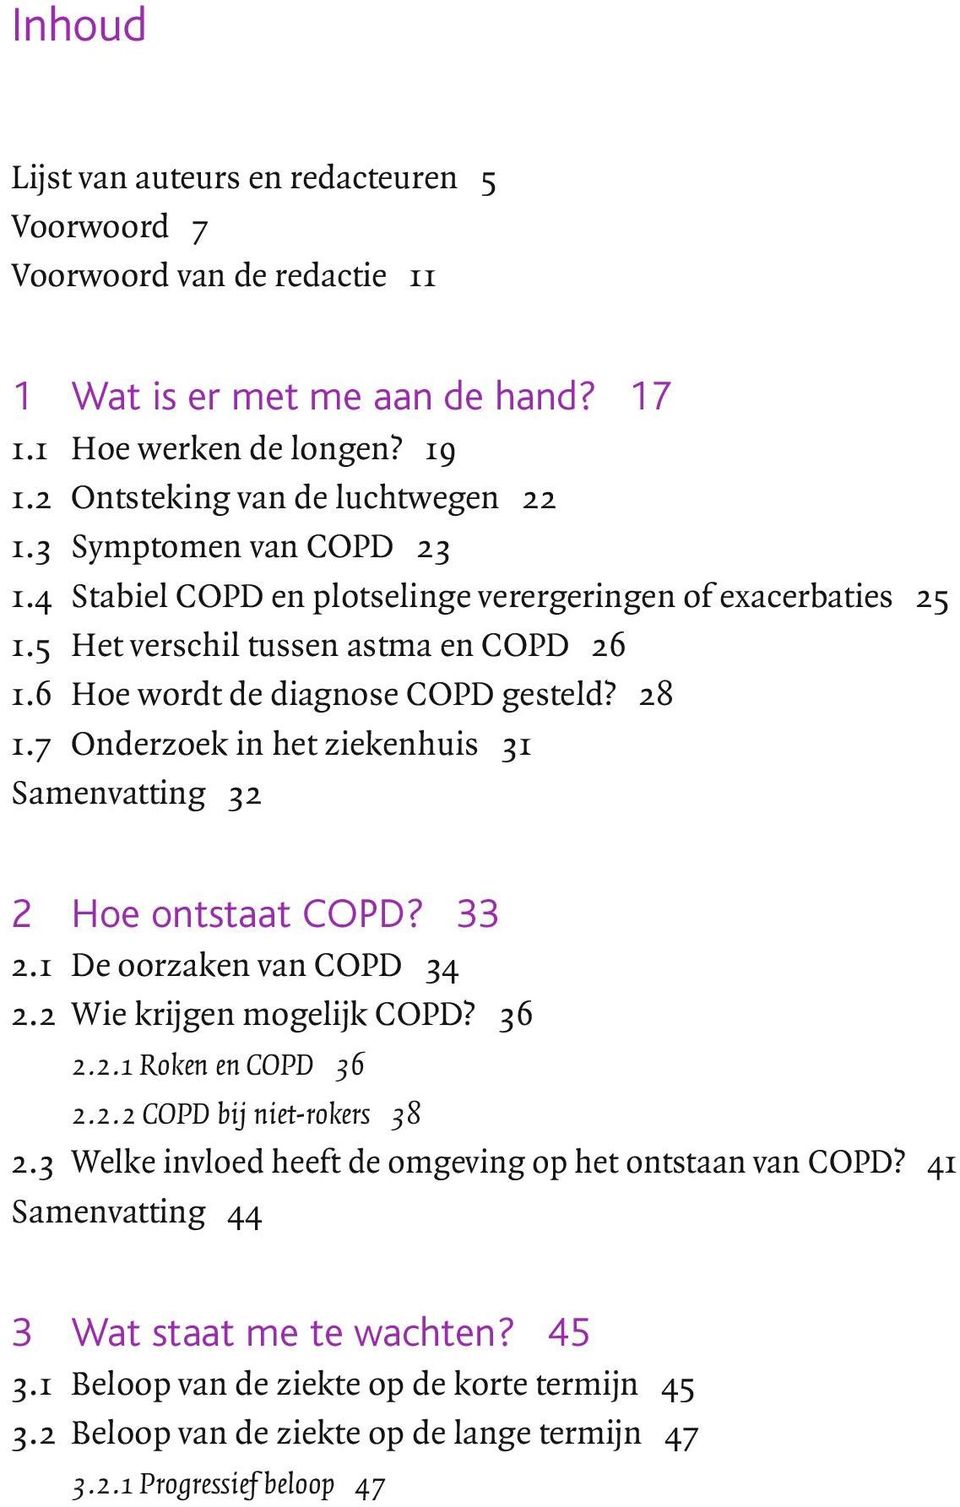 7 Onderzoek in het ziekenhuis 31 Samenvatting 32 2 Hoe ontstaat COPD? 33 2.1 De oorzaken van COPD 34 2.2 Wie krijgen mogelijk COPD? 36 2.2.1 Roken en COPD 36 2.2.2 COPD bij niet-rokers 38 2.